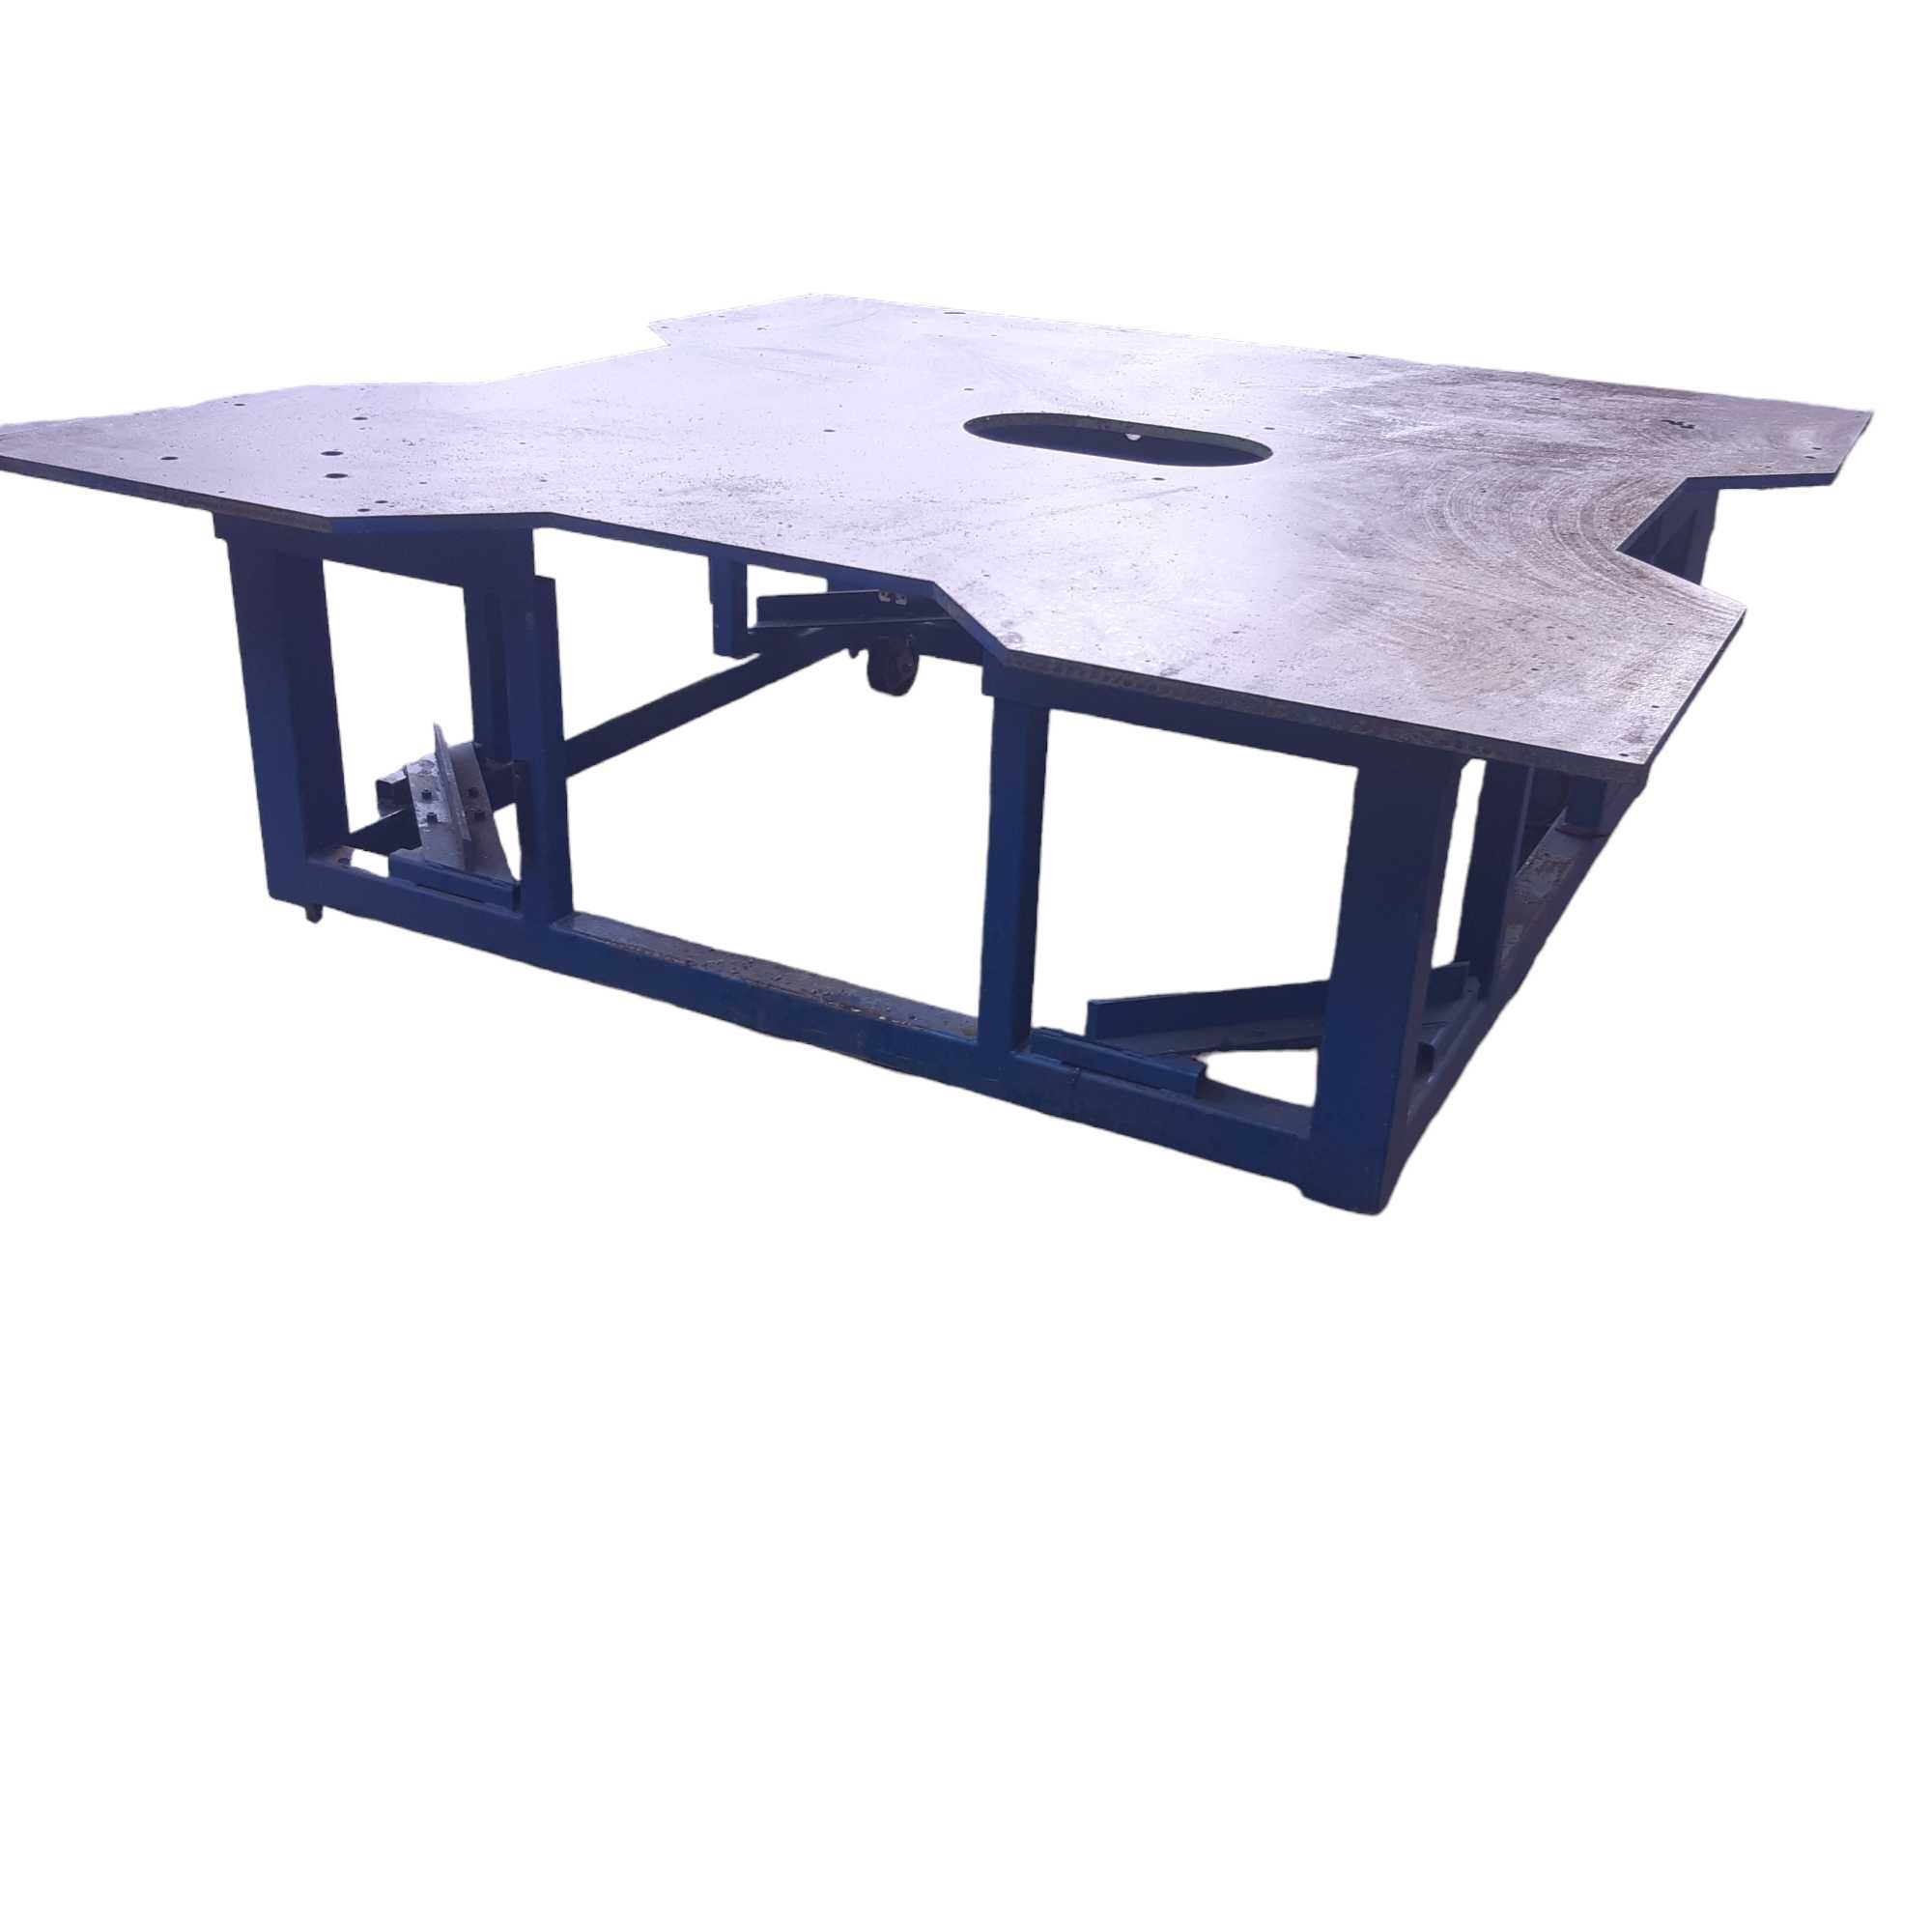 Stół spawalniczo - montażowy, warsztatowy